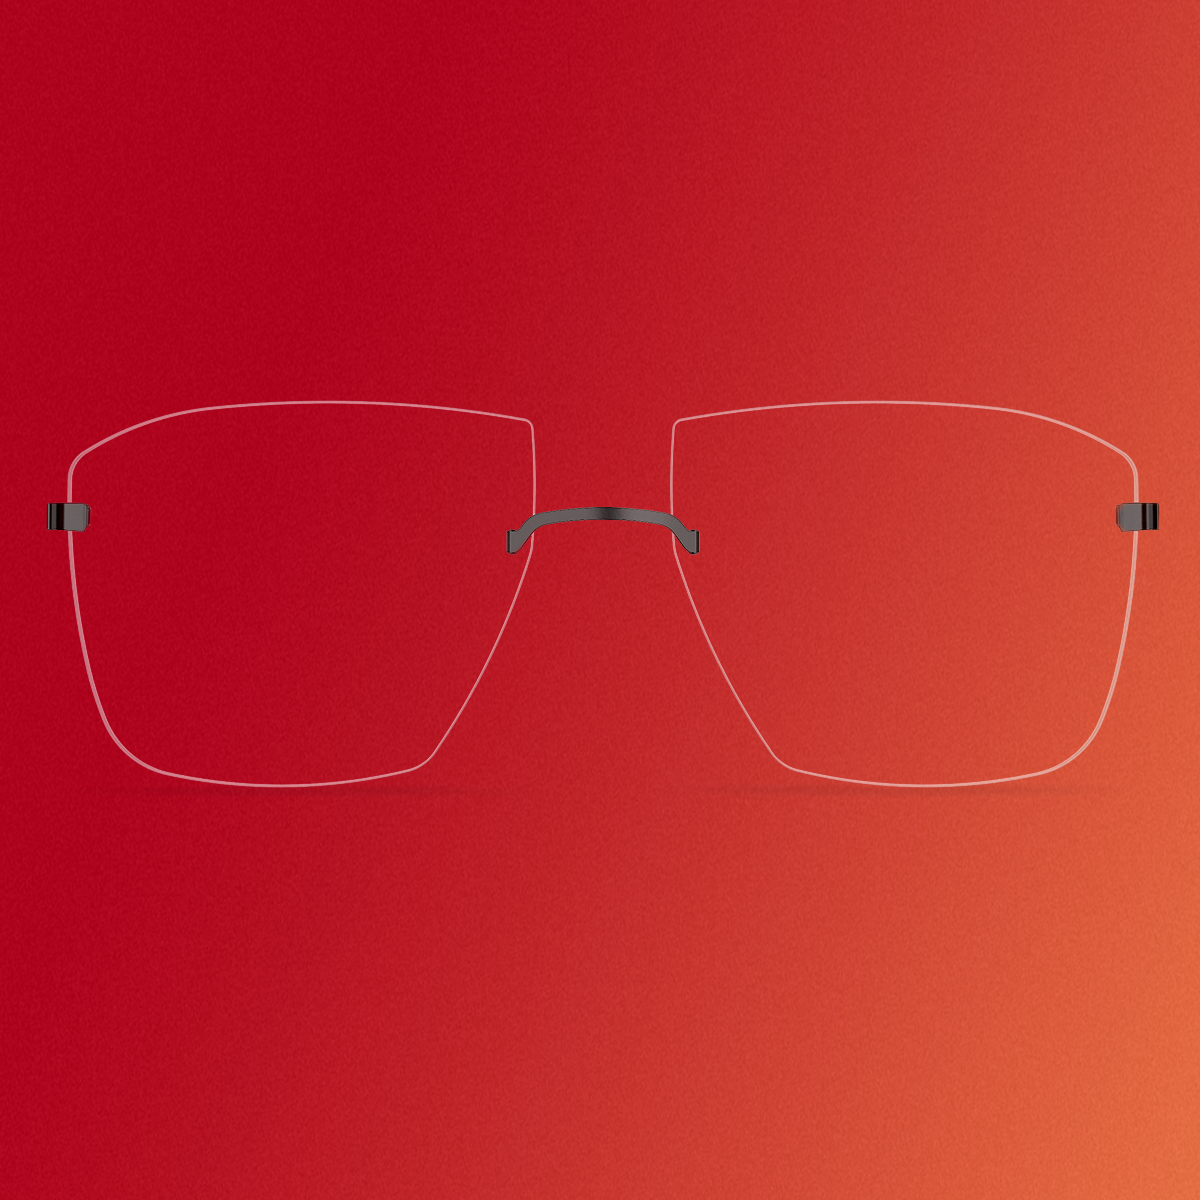 Detailansicht einer randlosen Brille mit eckigen Gläsern und schwarzen Titanakzenten, Modell 2451 aus der Kollektion LINDBERG spirit, in einem Editorial für das DANSK-Magazin